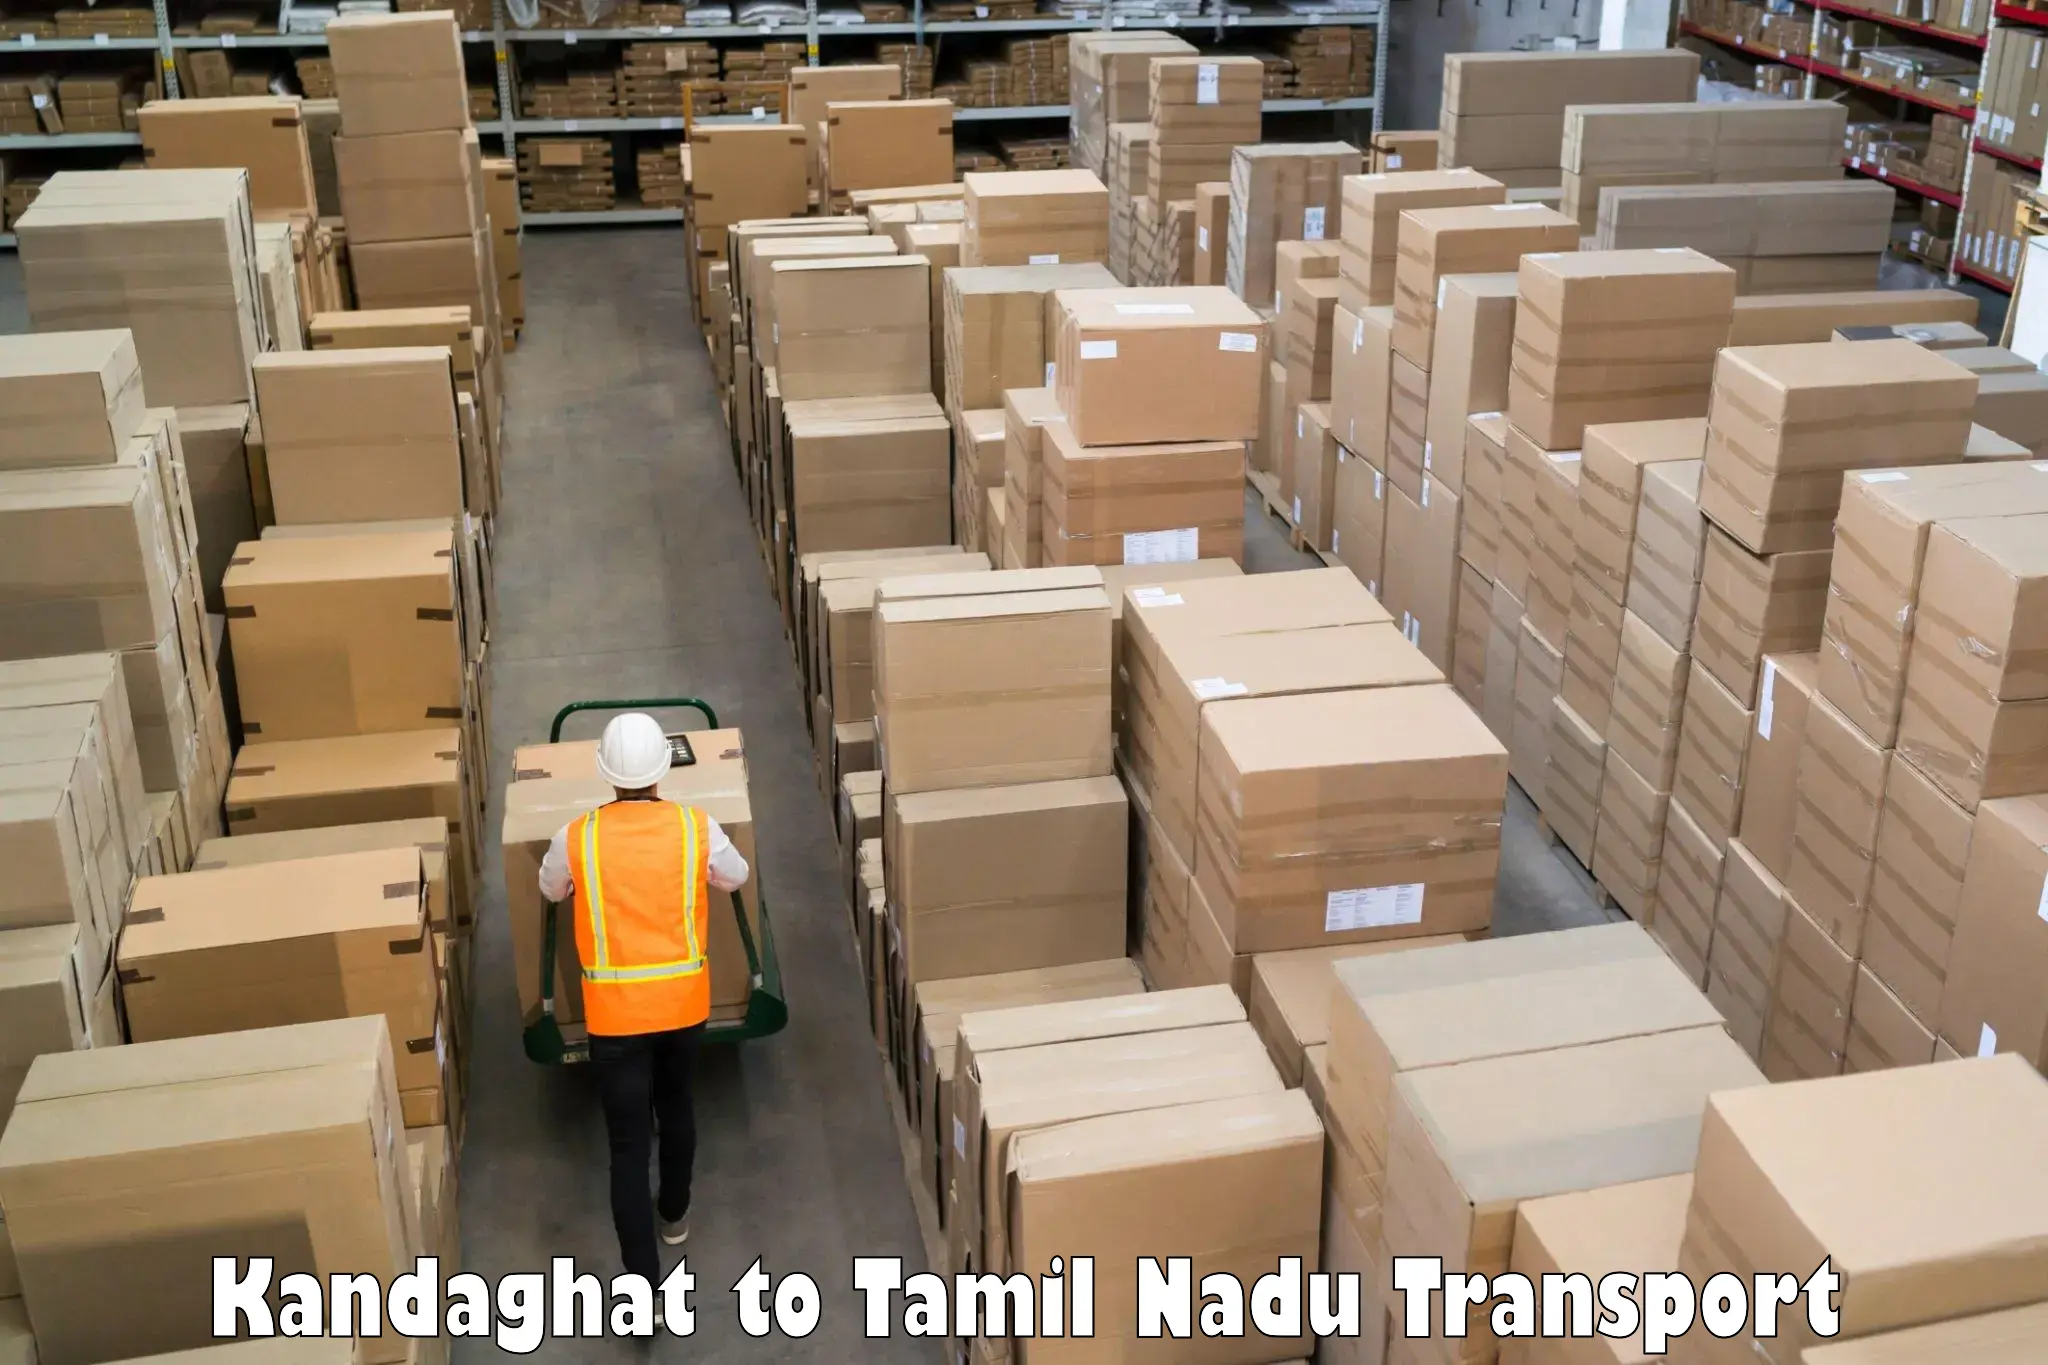 International cargo transportation services Kandaghat to Udumalpet